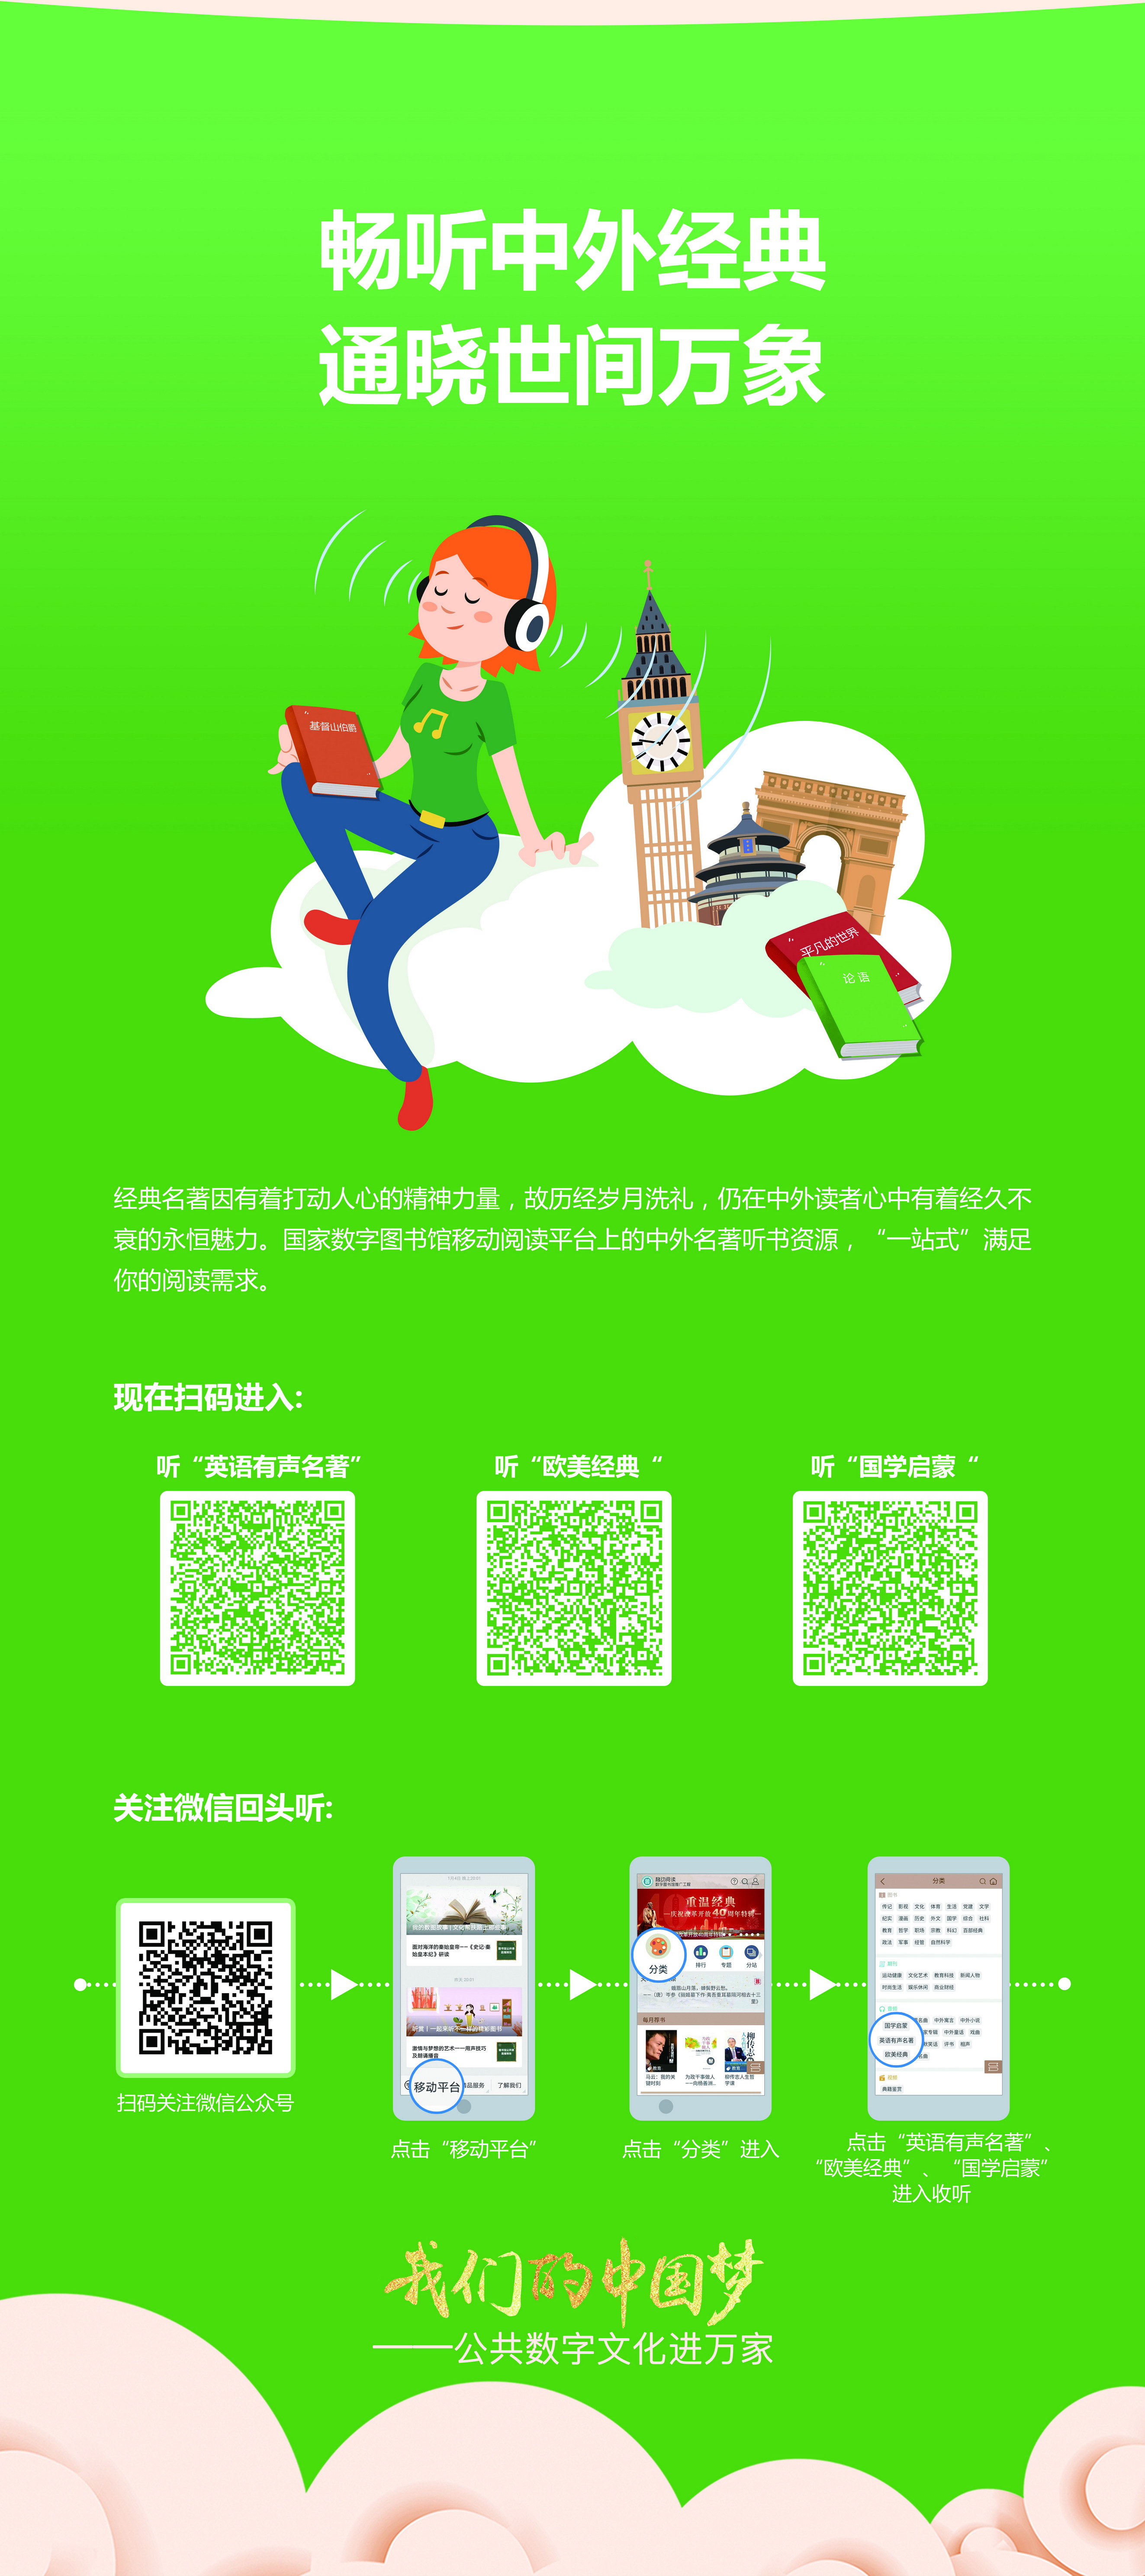 我们的中国梦——公共数字文化进万家活动线下主题展览_图7